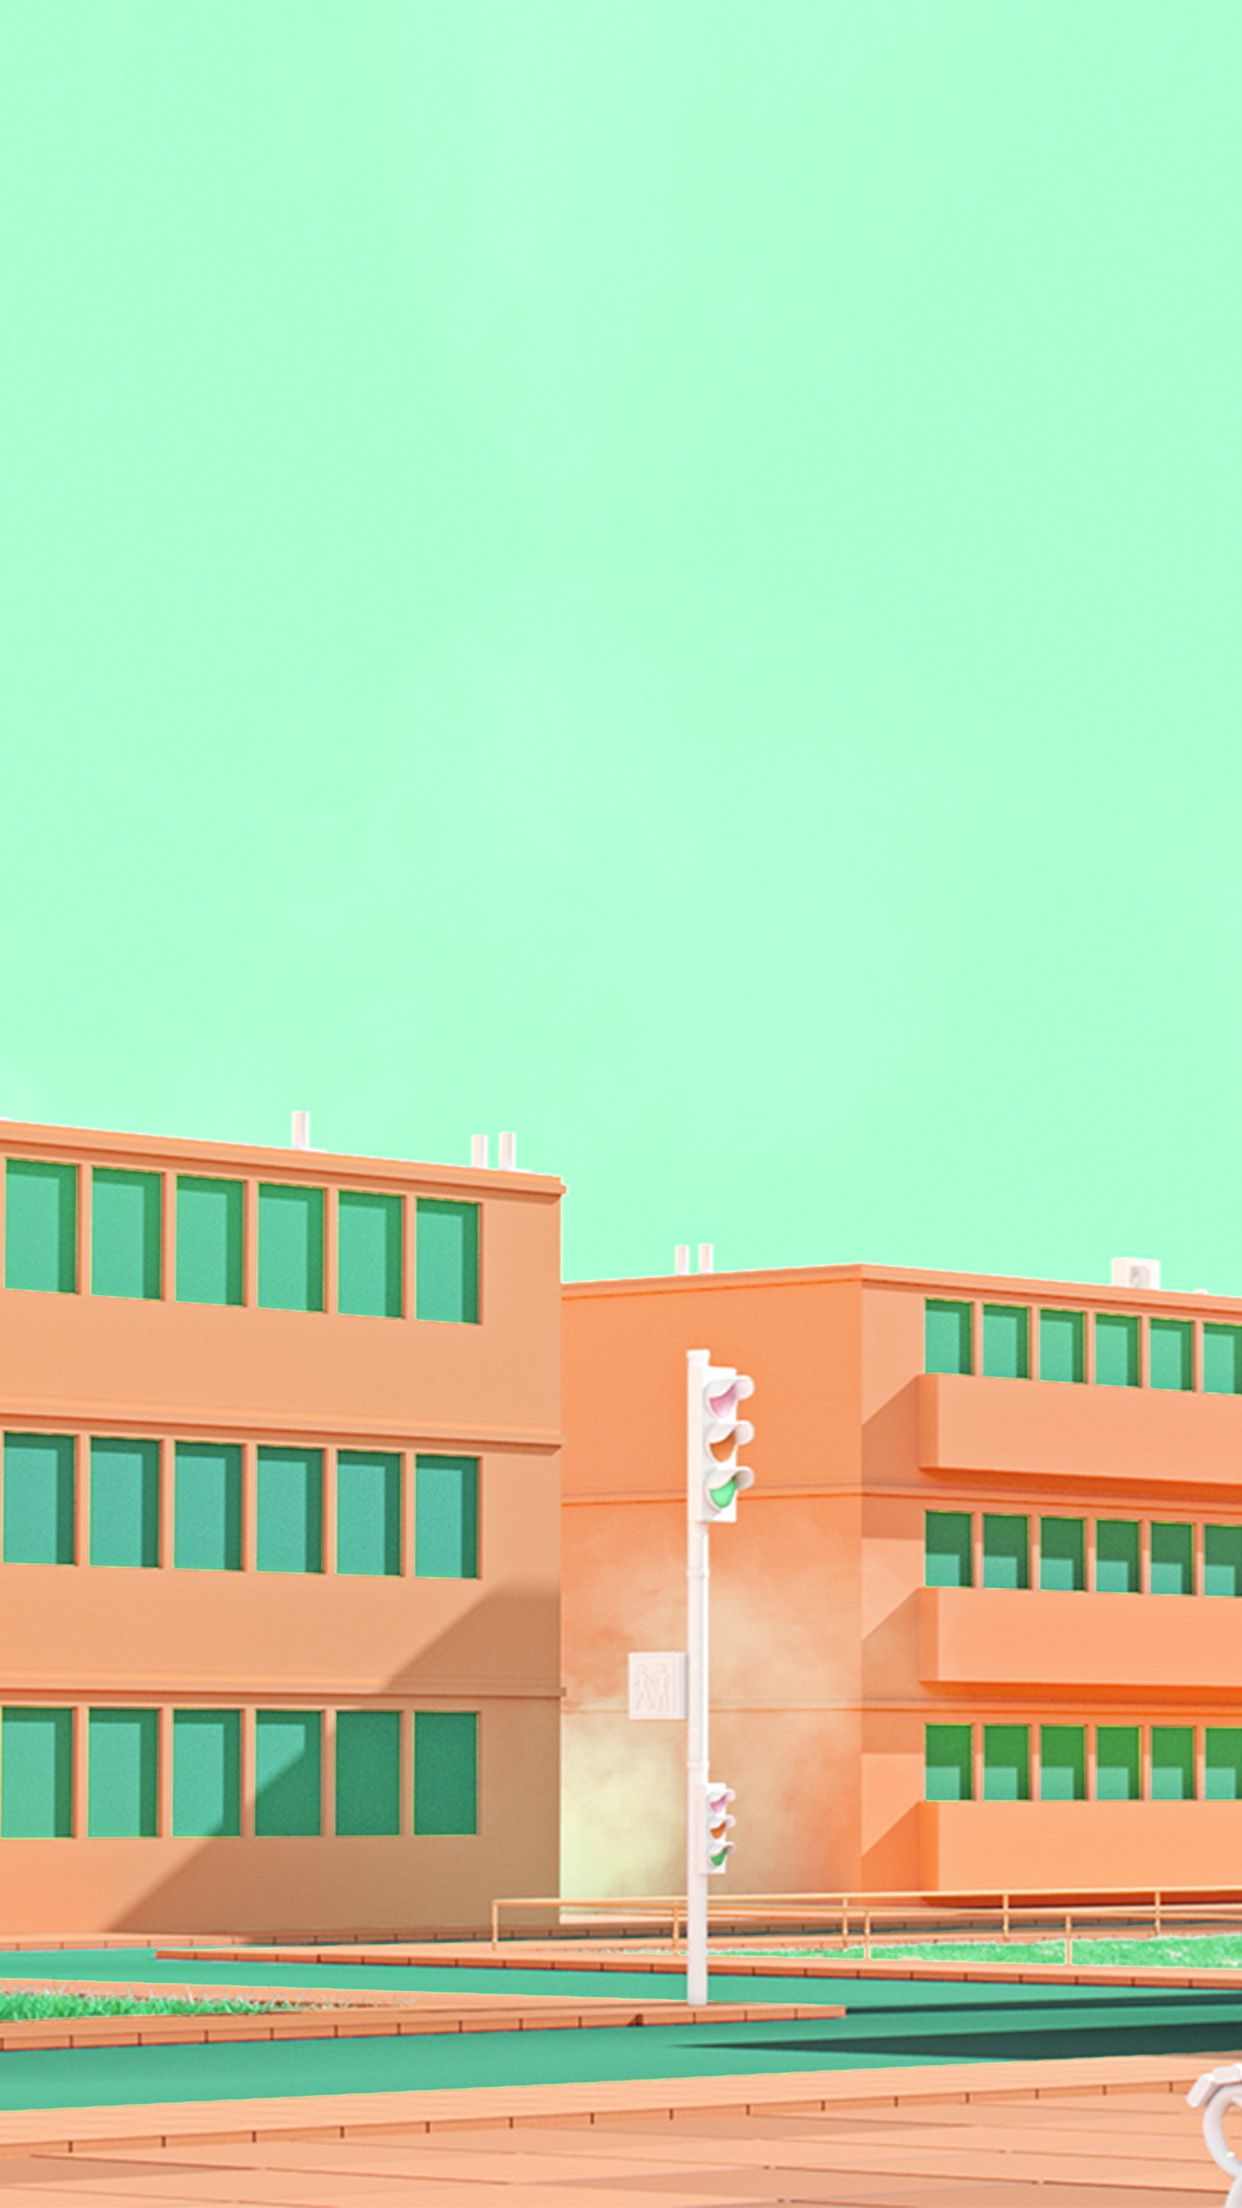 iPhone X wallpaper. school anime illust orange minimal simple art